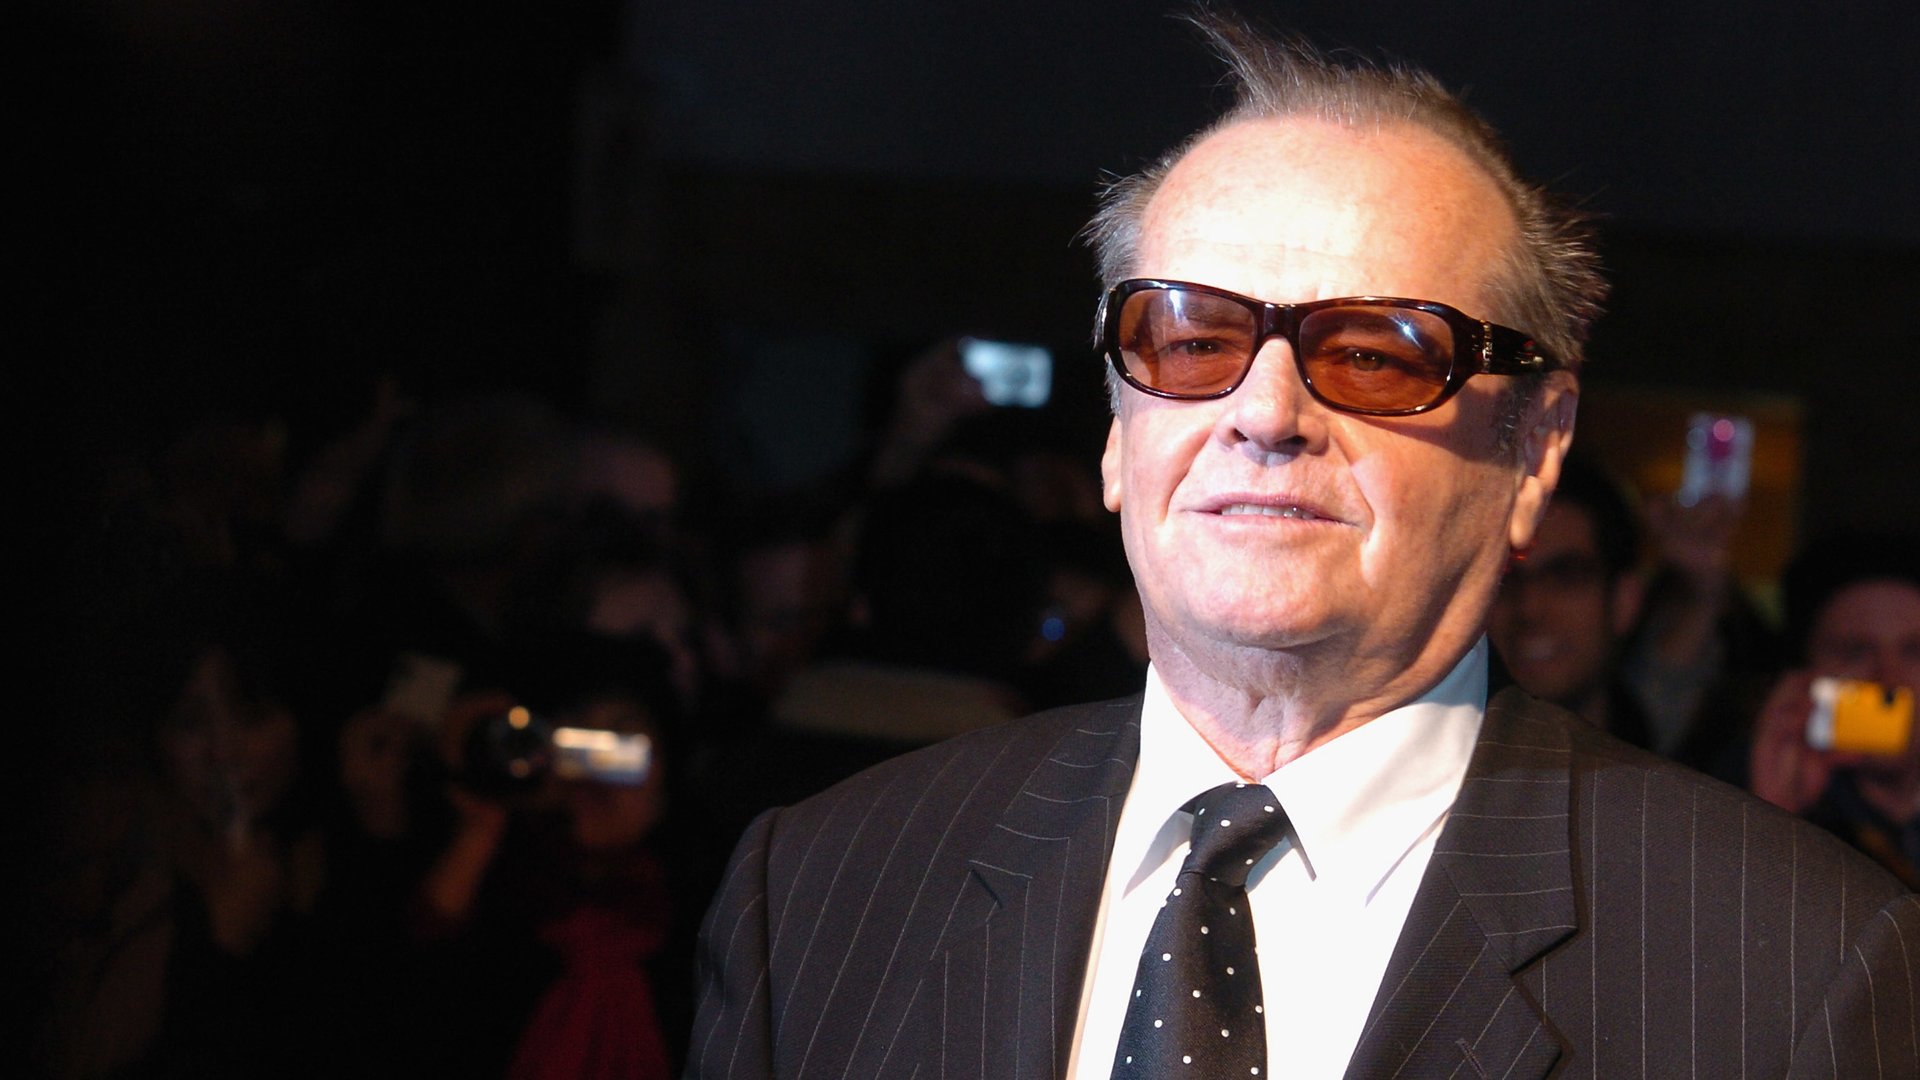 #Seit 12 Jahren keine Filme mehr: Was macht Hollywood-Star Jack Nicholson heute?